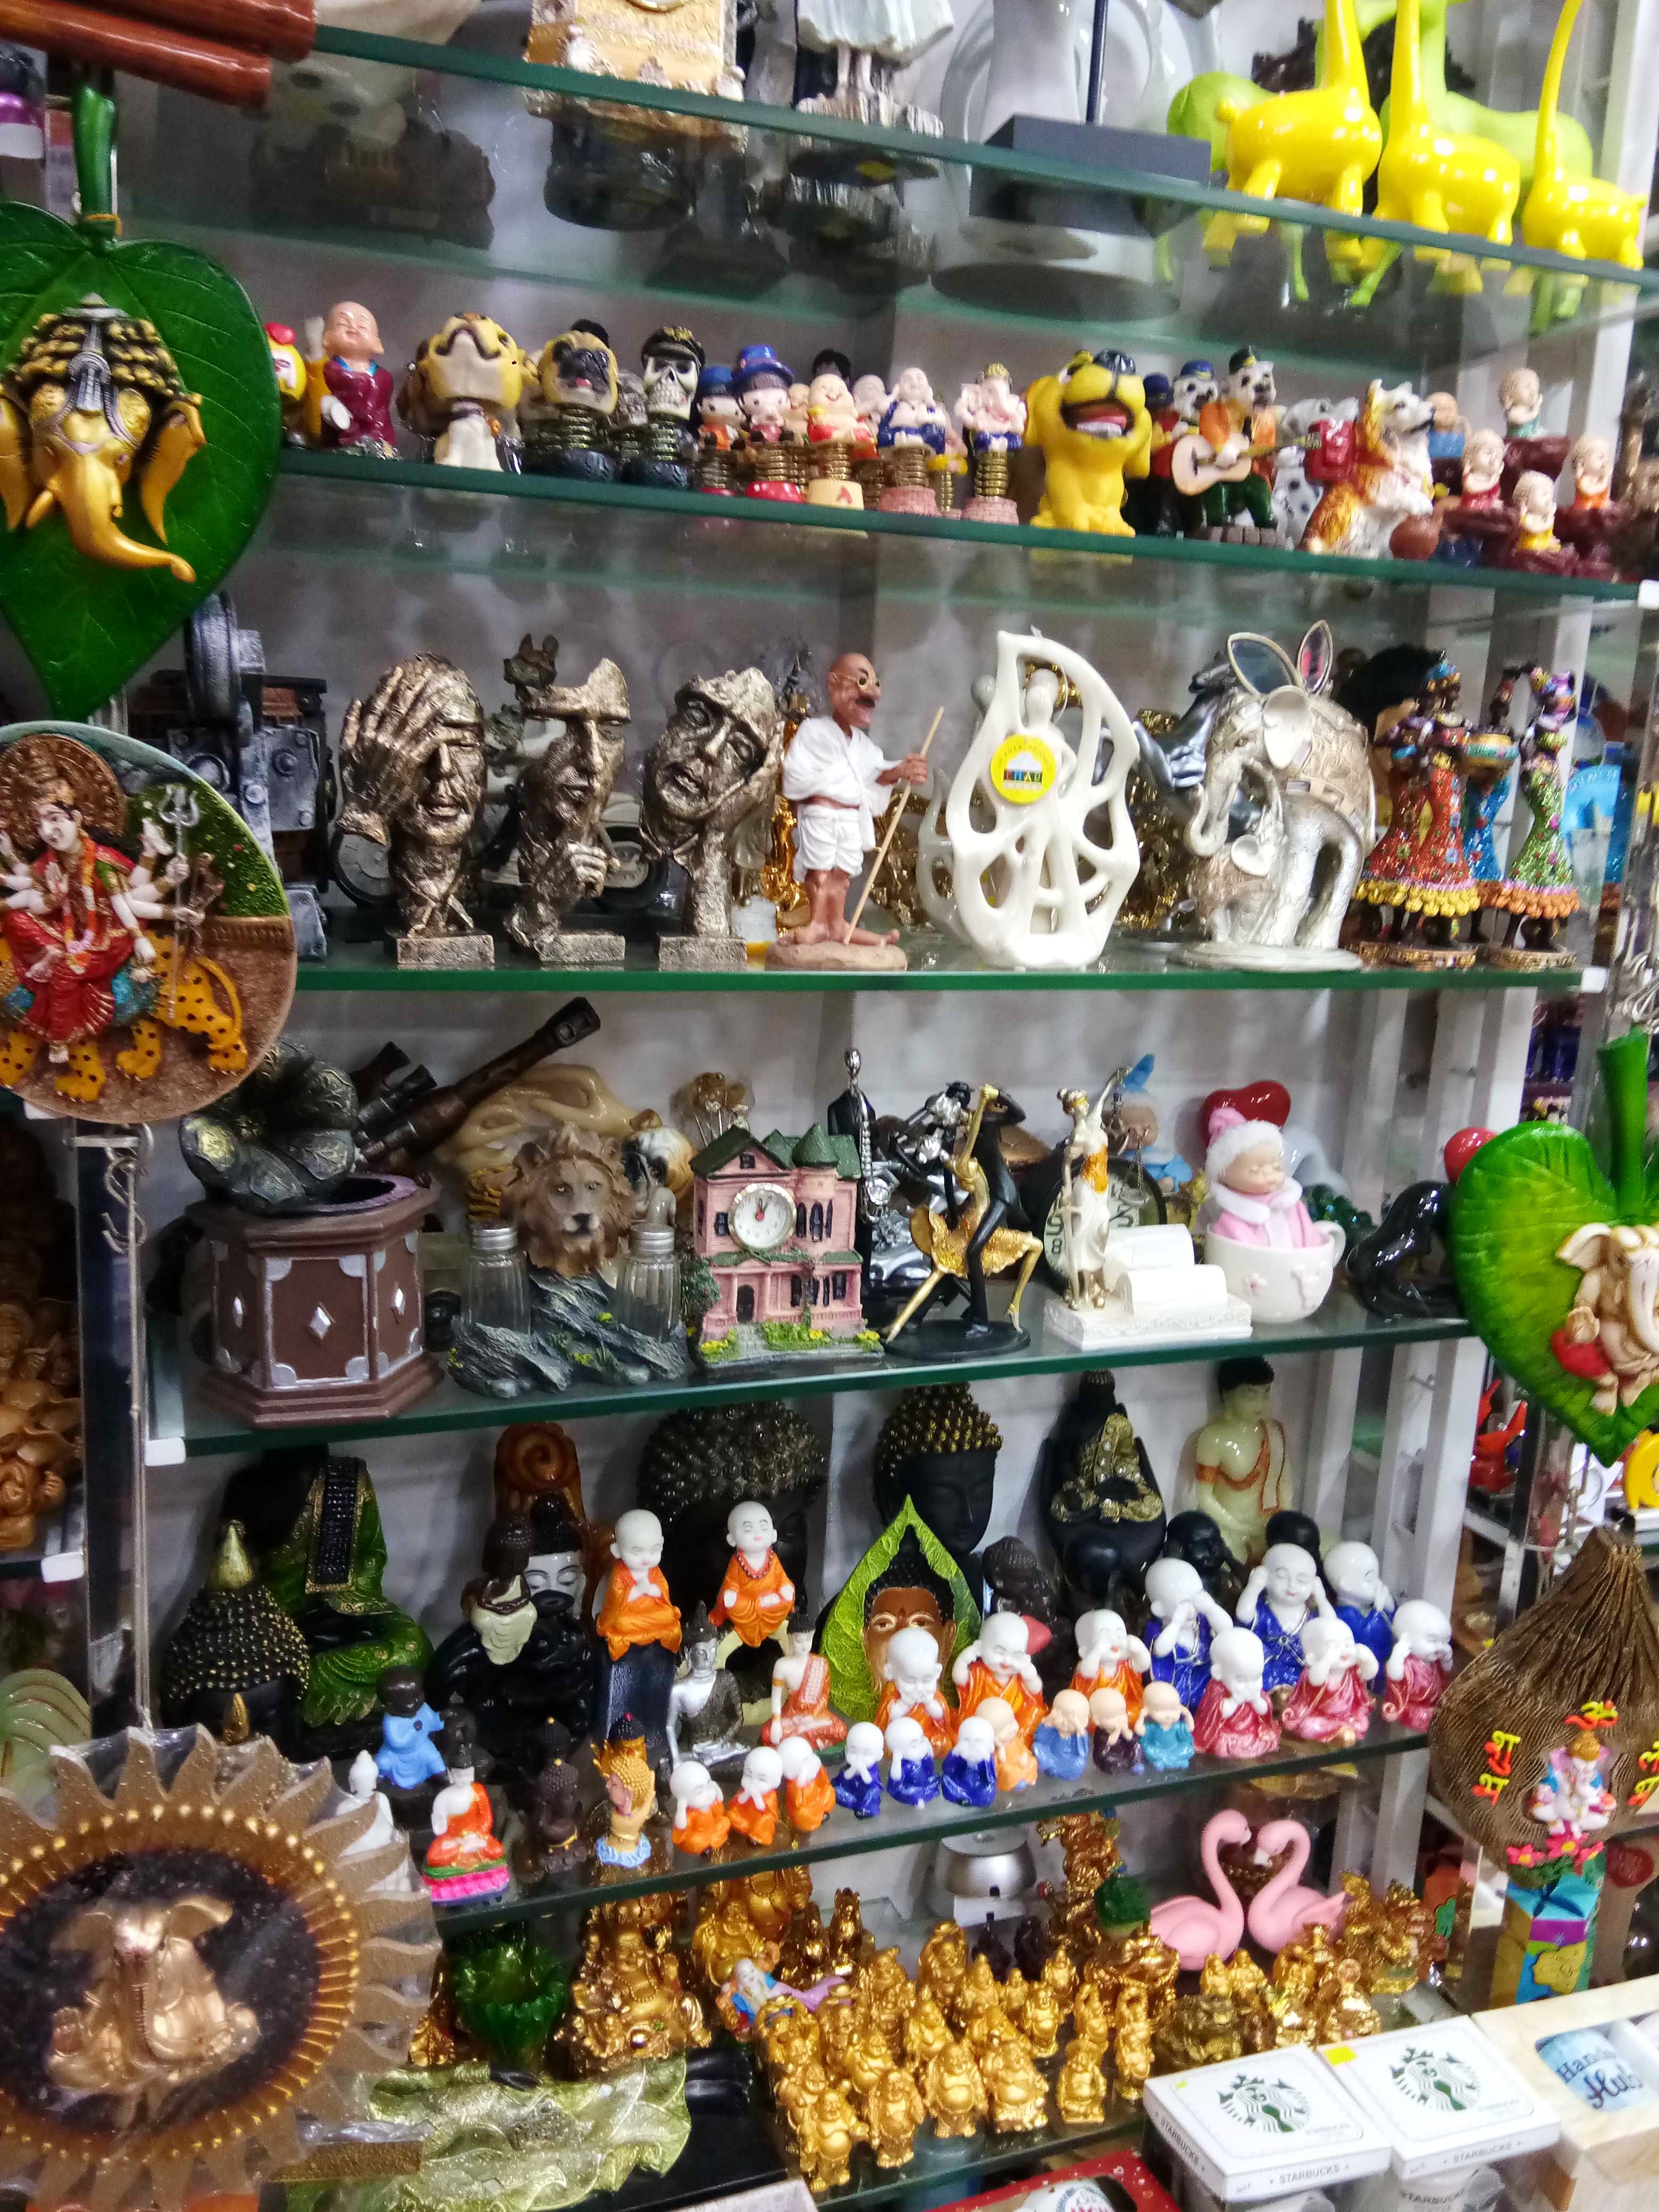 Market,Bazaar,Public space,Collection,Souvenir,Toy,Action figure,City,Marketplace